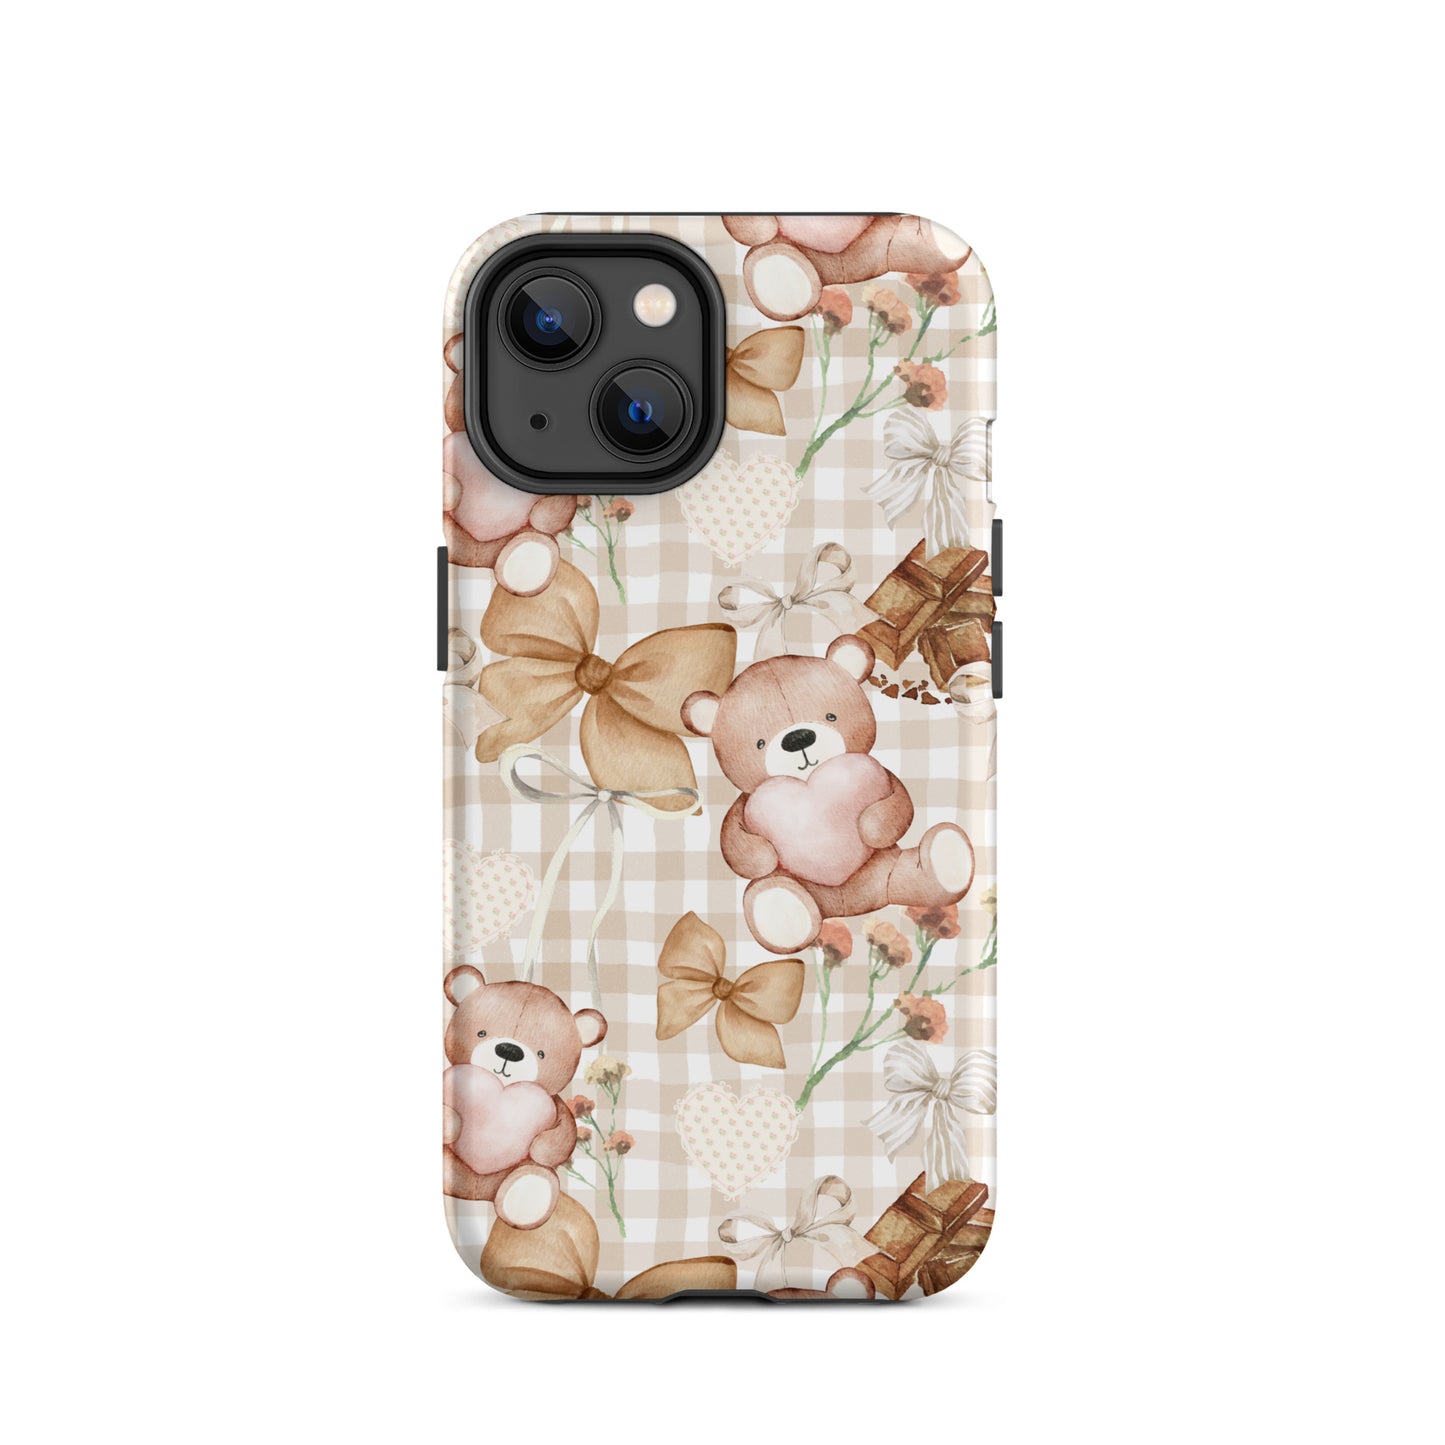 Choco Teddy Bear iPhone Case